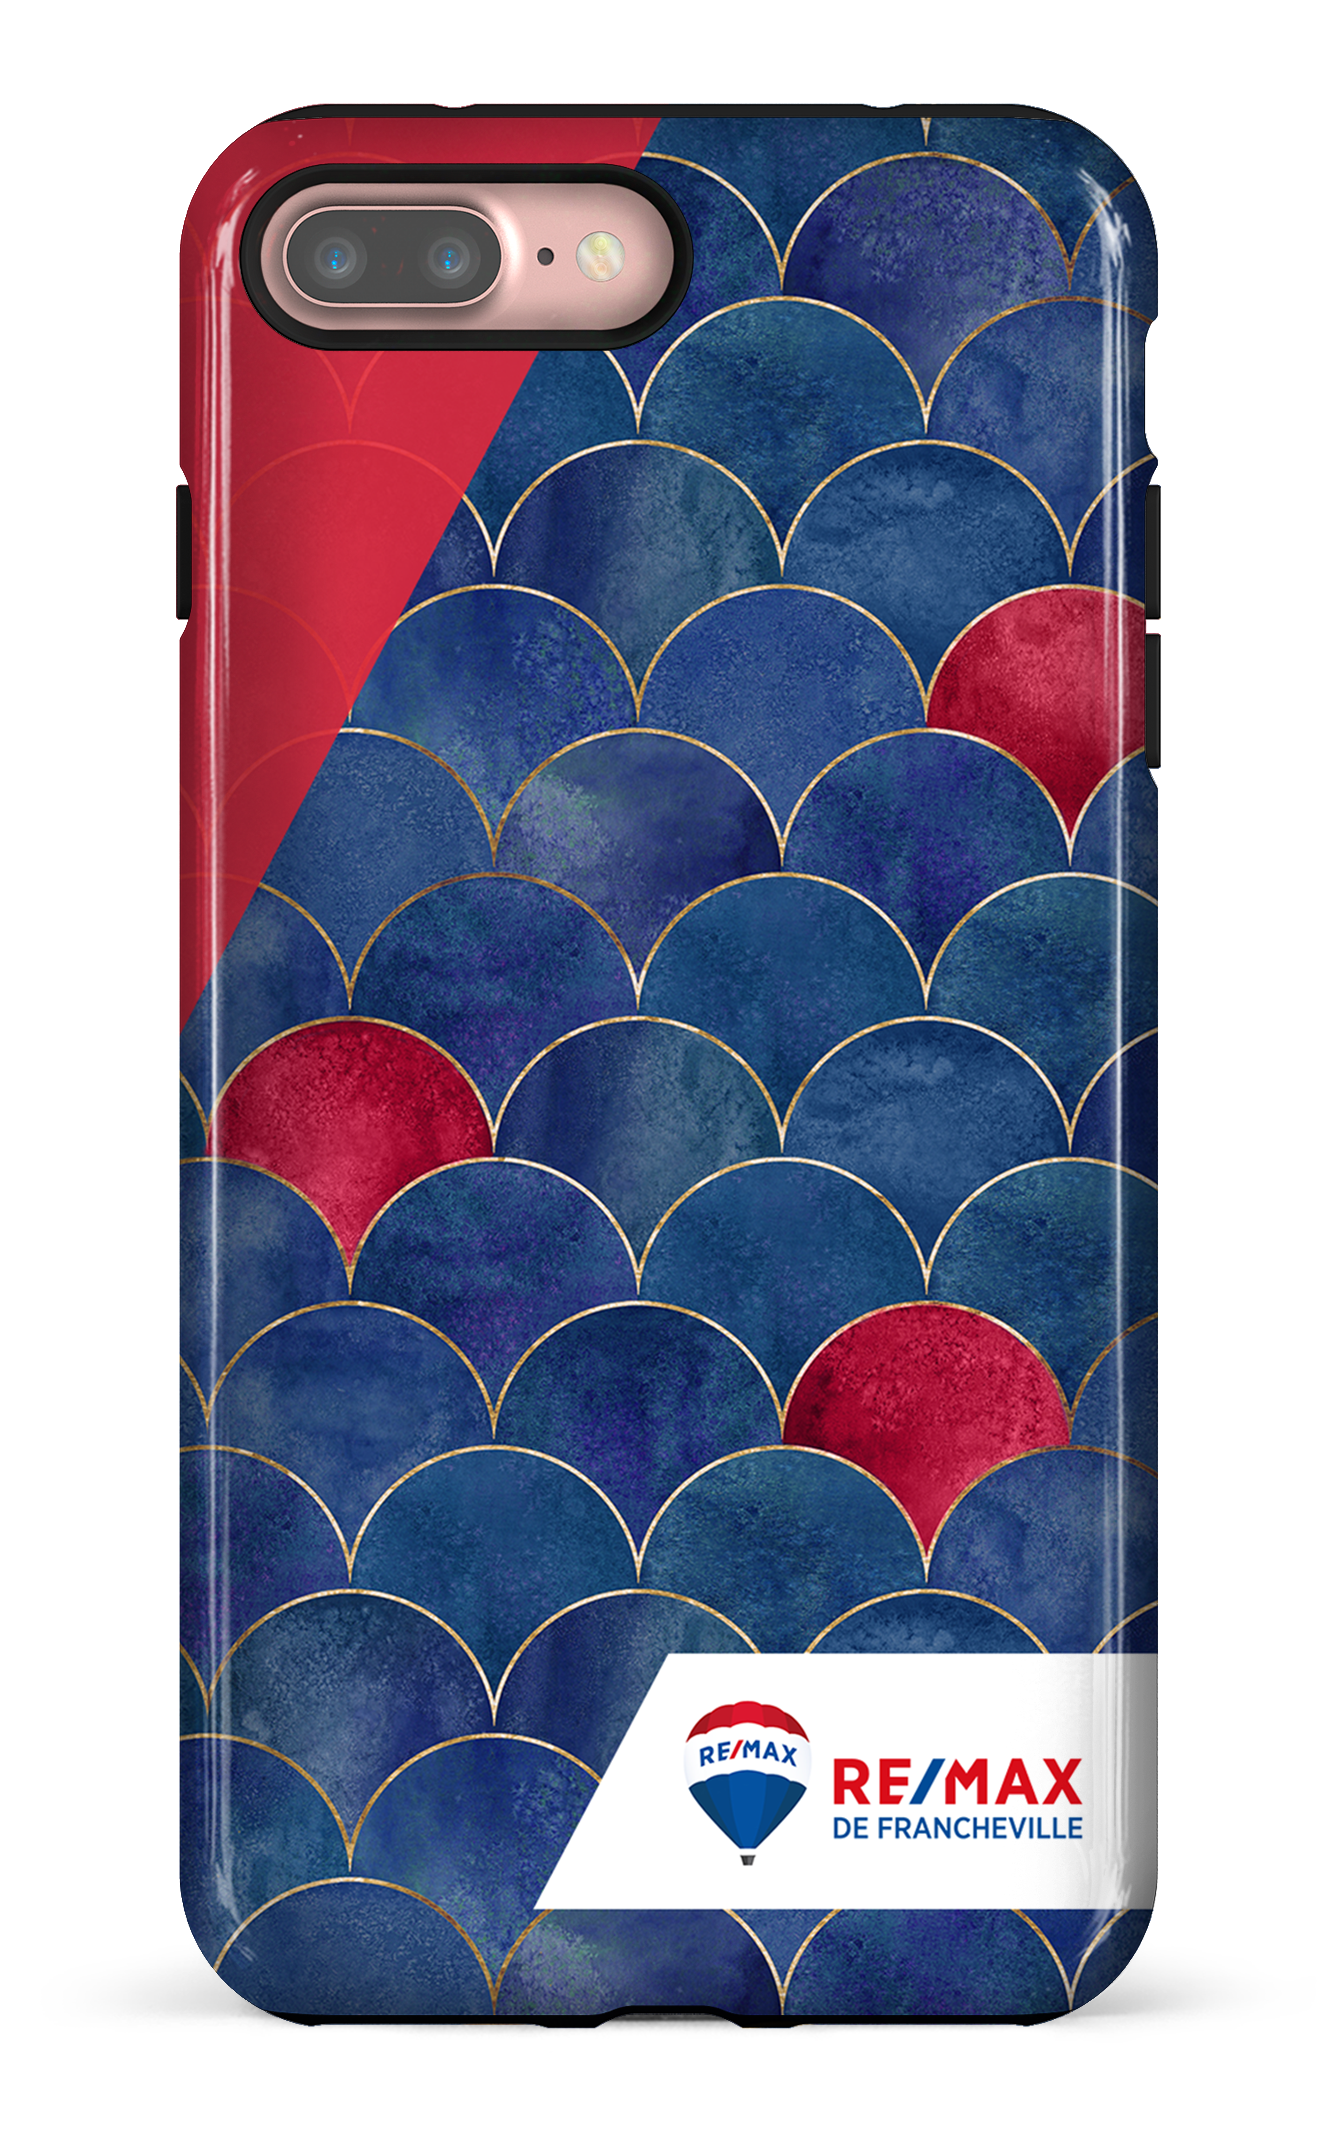 Écailles bicolores de Francheville - iPhone 7 Plus